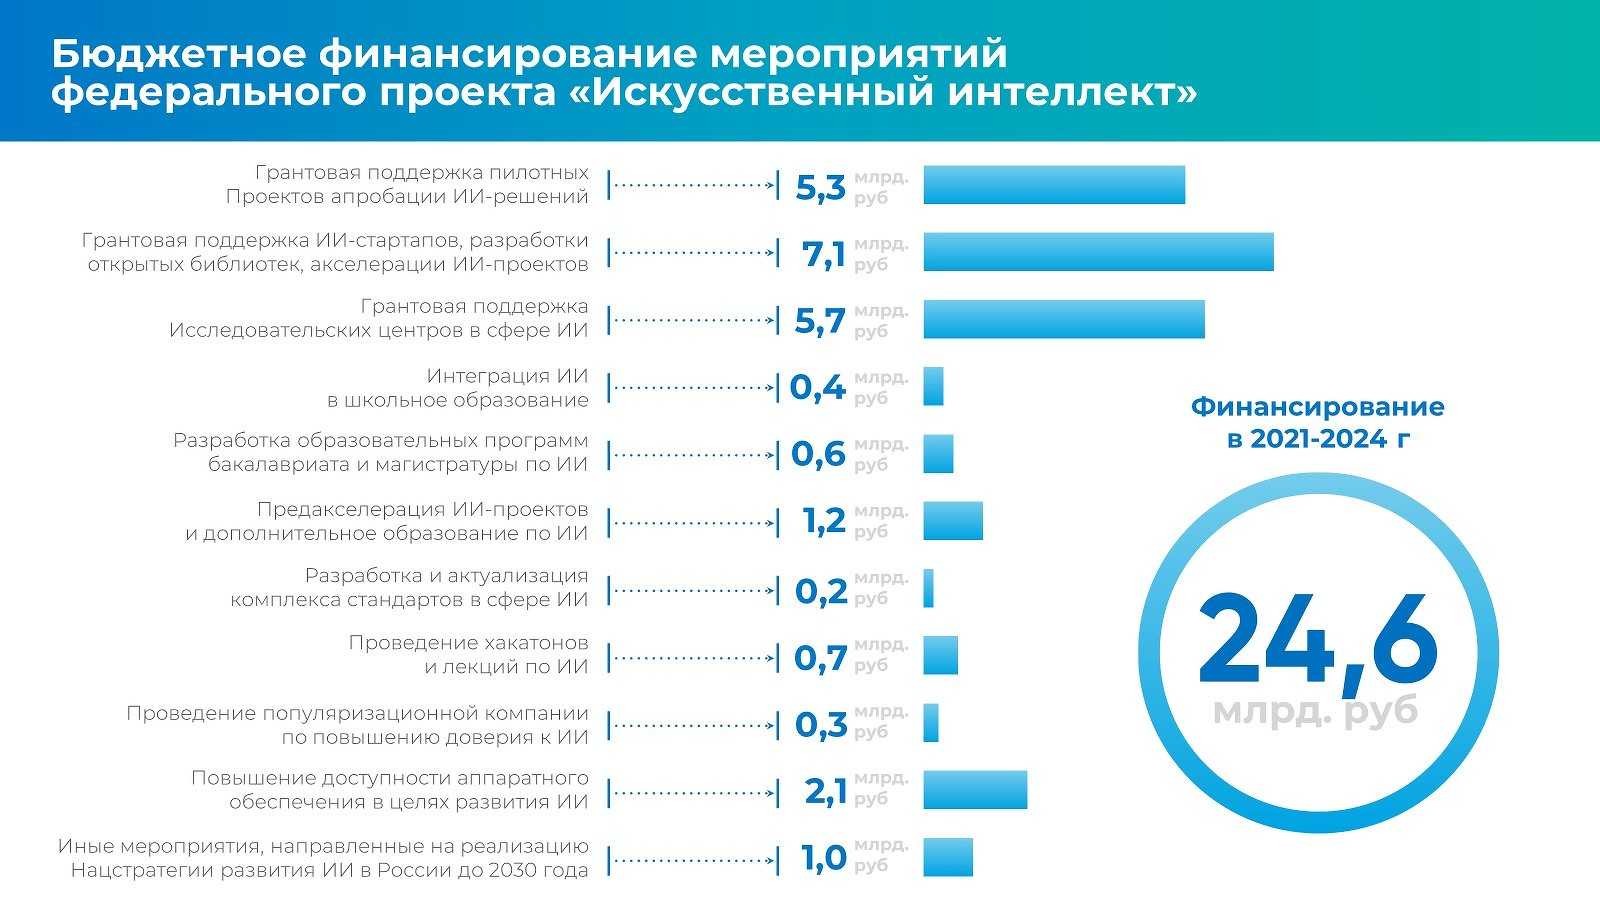 Сколько людей проживает в россии 2024 году. Федеральный проект искусственный интеллект. Статистика стартапов. Финансирование искусственного интеллекта в России. Искусственный интеллект статистика.